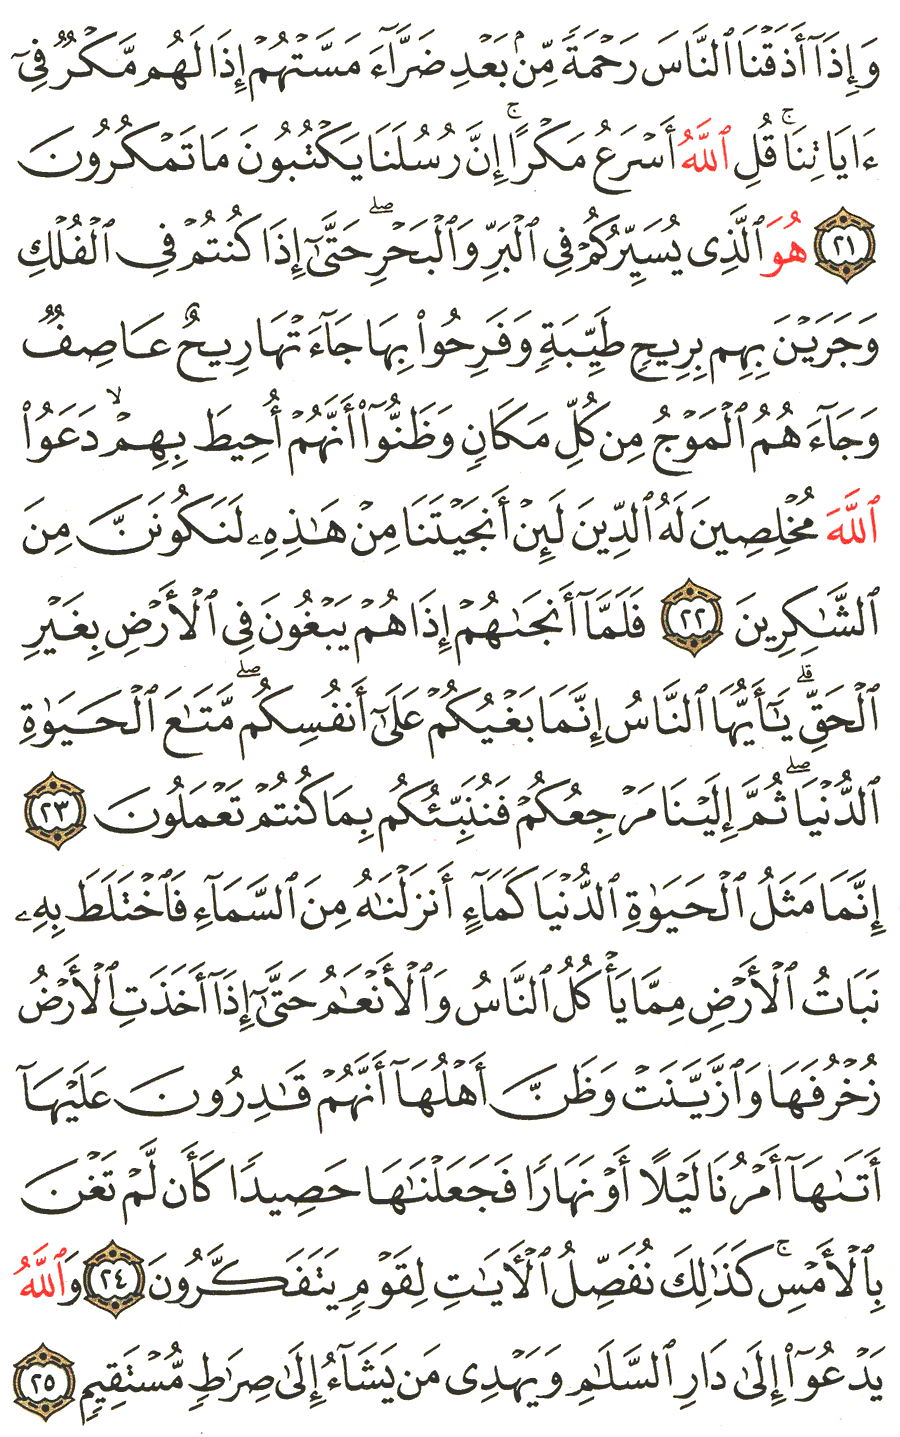 الصفحة 211 من القرآن الكريم